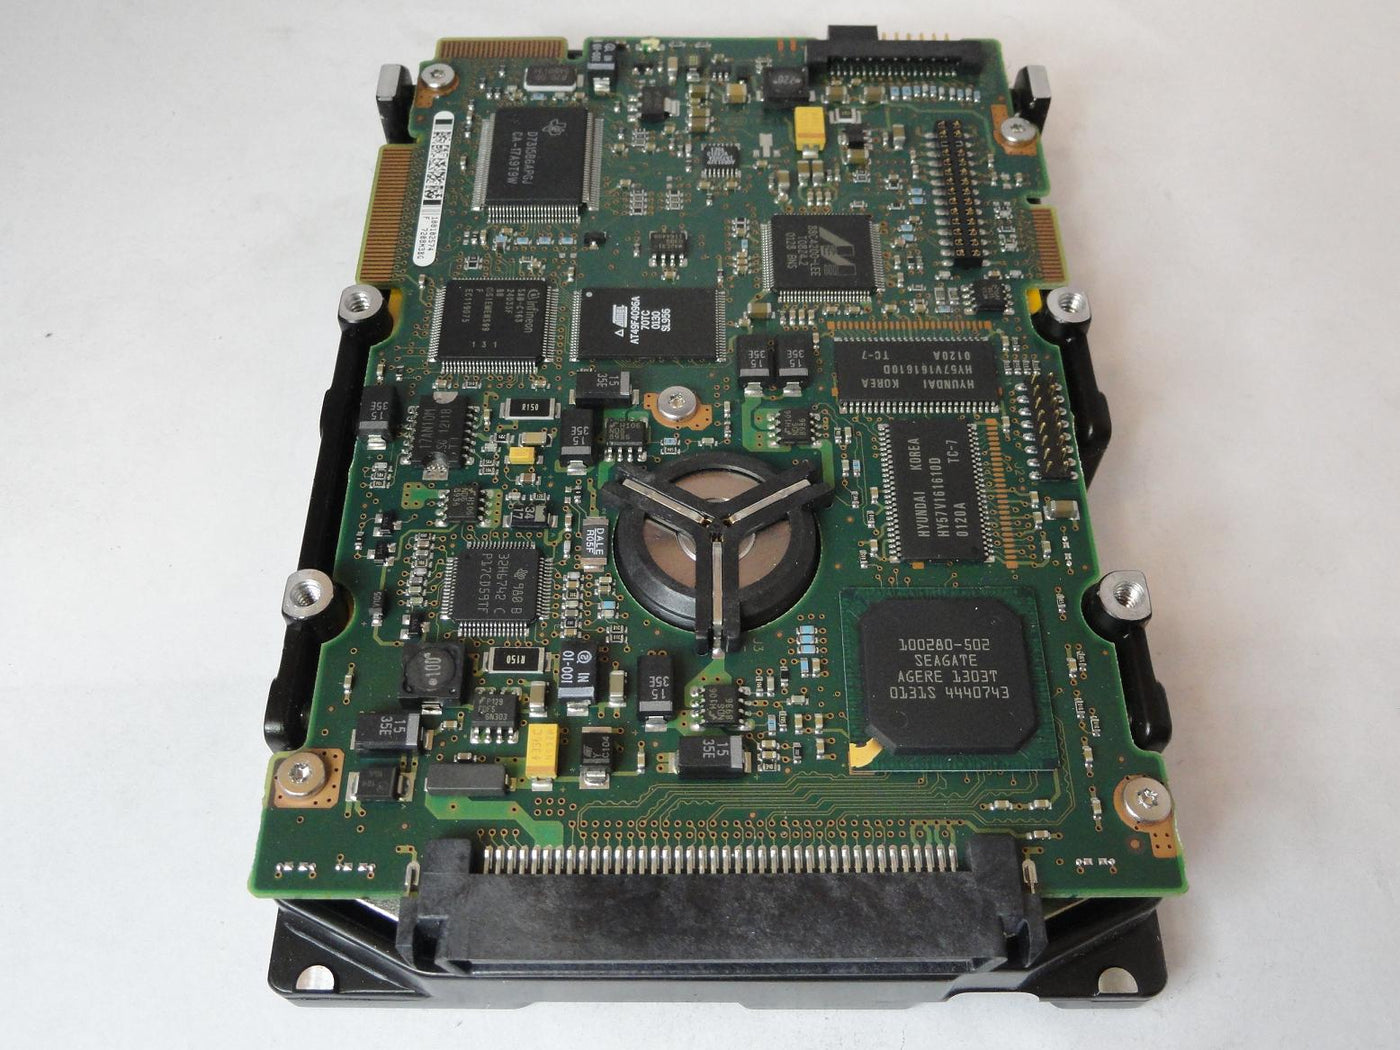 PR23000_9P2006-022_Seagate Compaq 18.2Gb SCSI 80 Pin 15Krpm 3.5in HDD - Image3